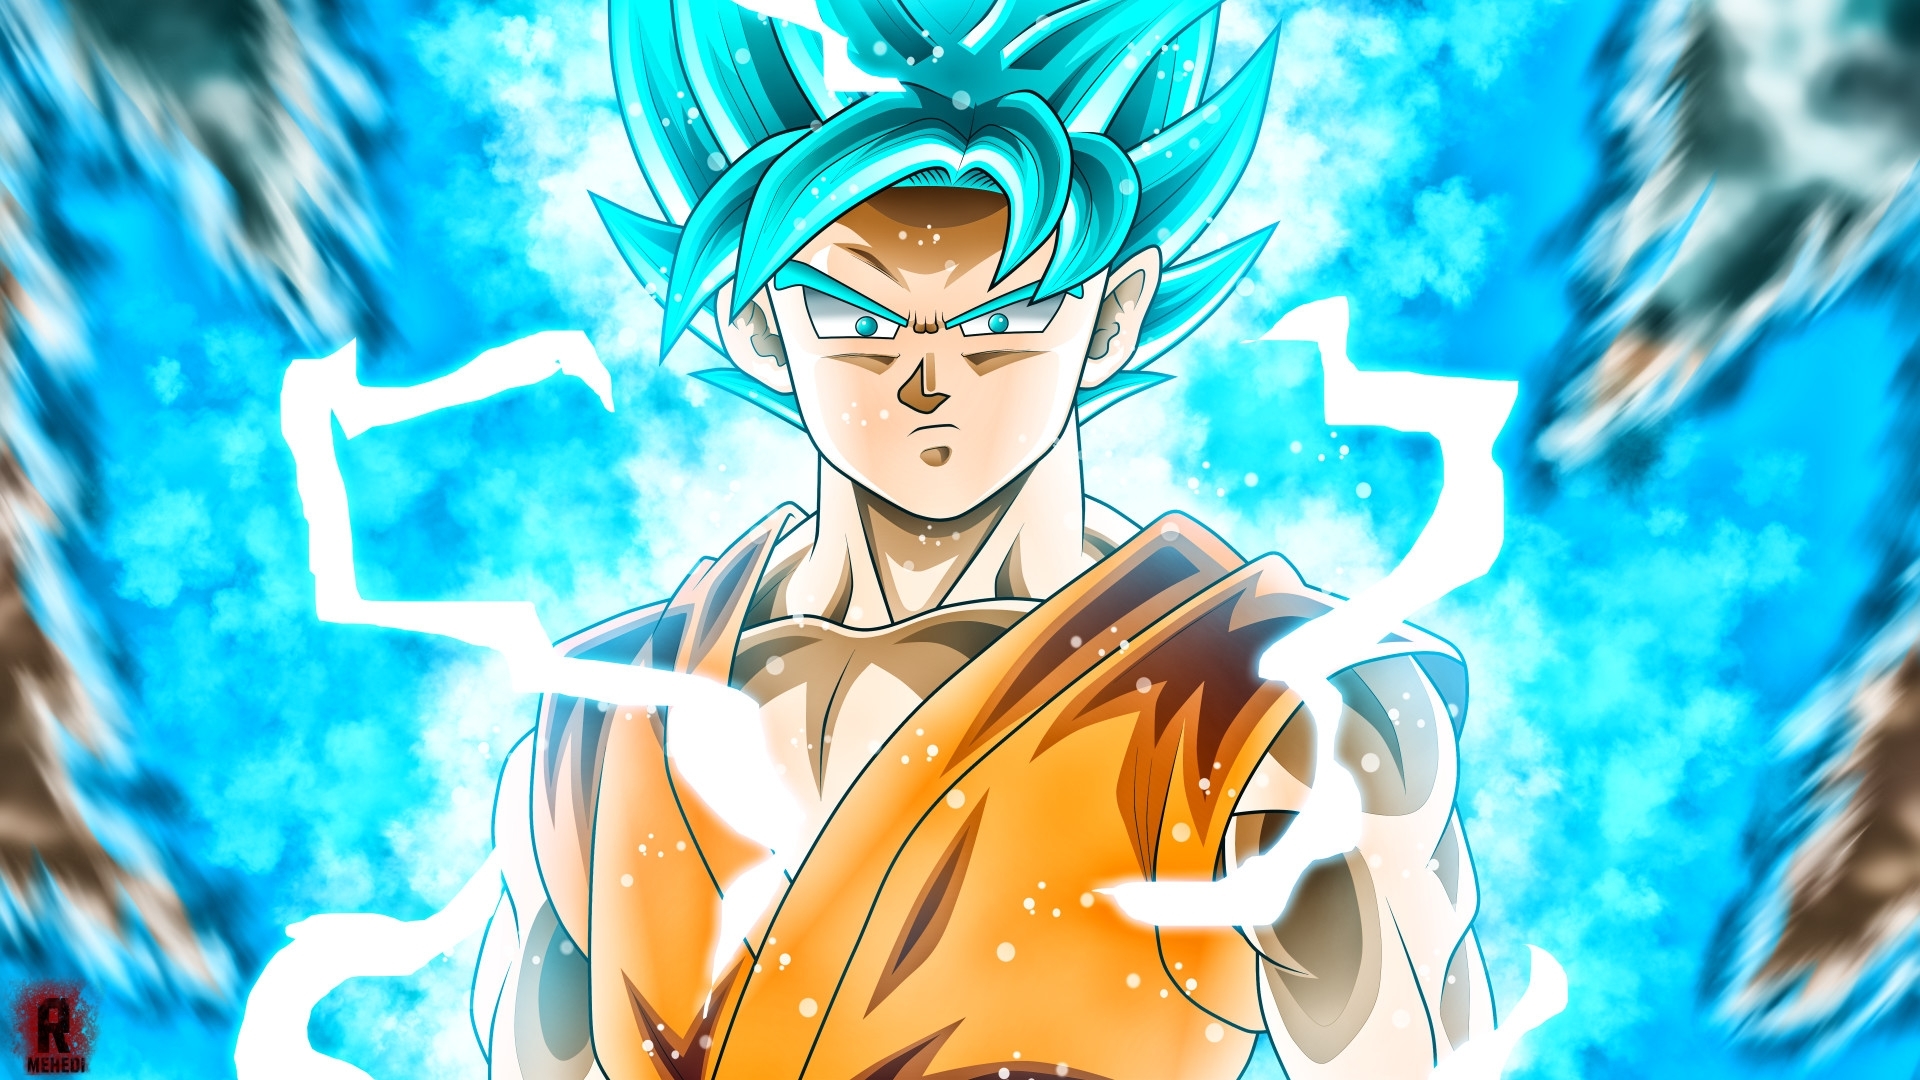 10 Latest Goku Super Saiyan God Super Saiyan Wallpaper Hd FULL HD 1080p